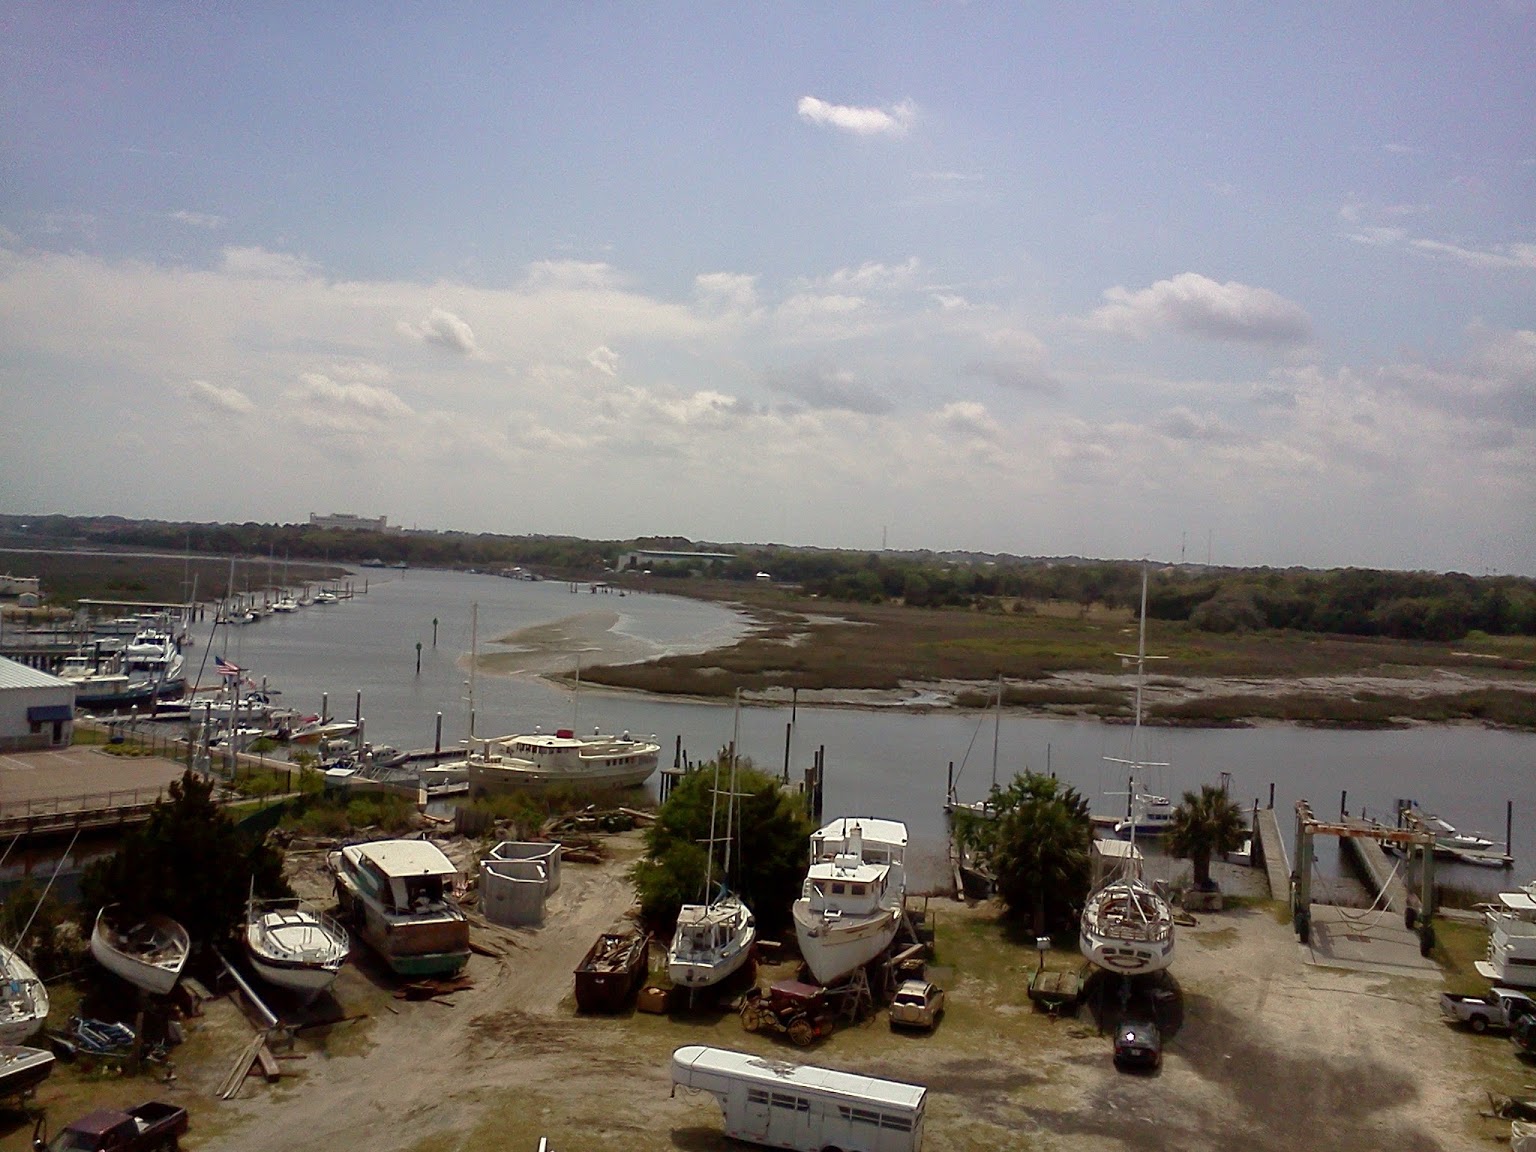 Xynides Boat Yard in St. Augustine, FL